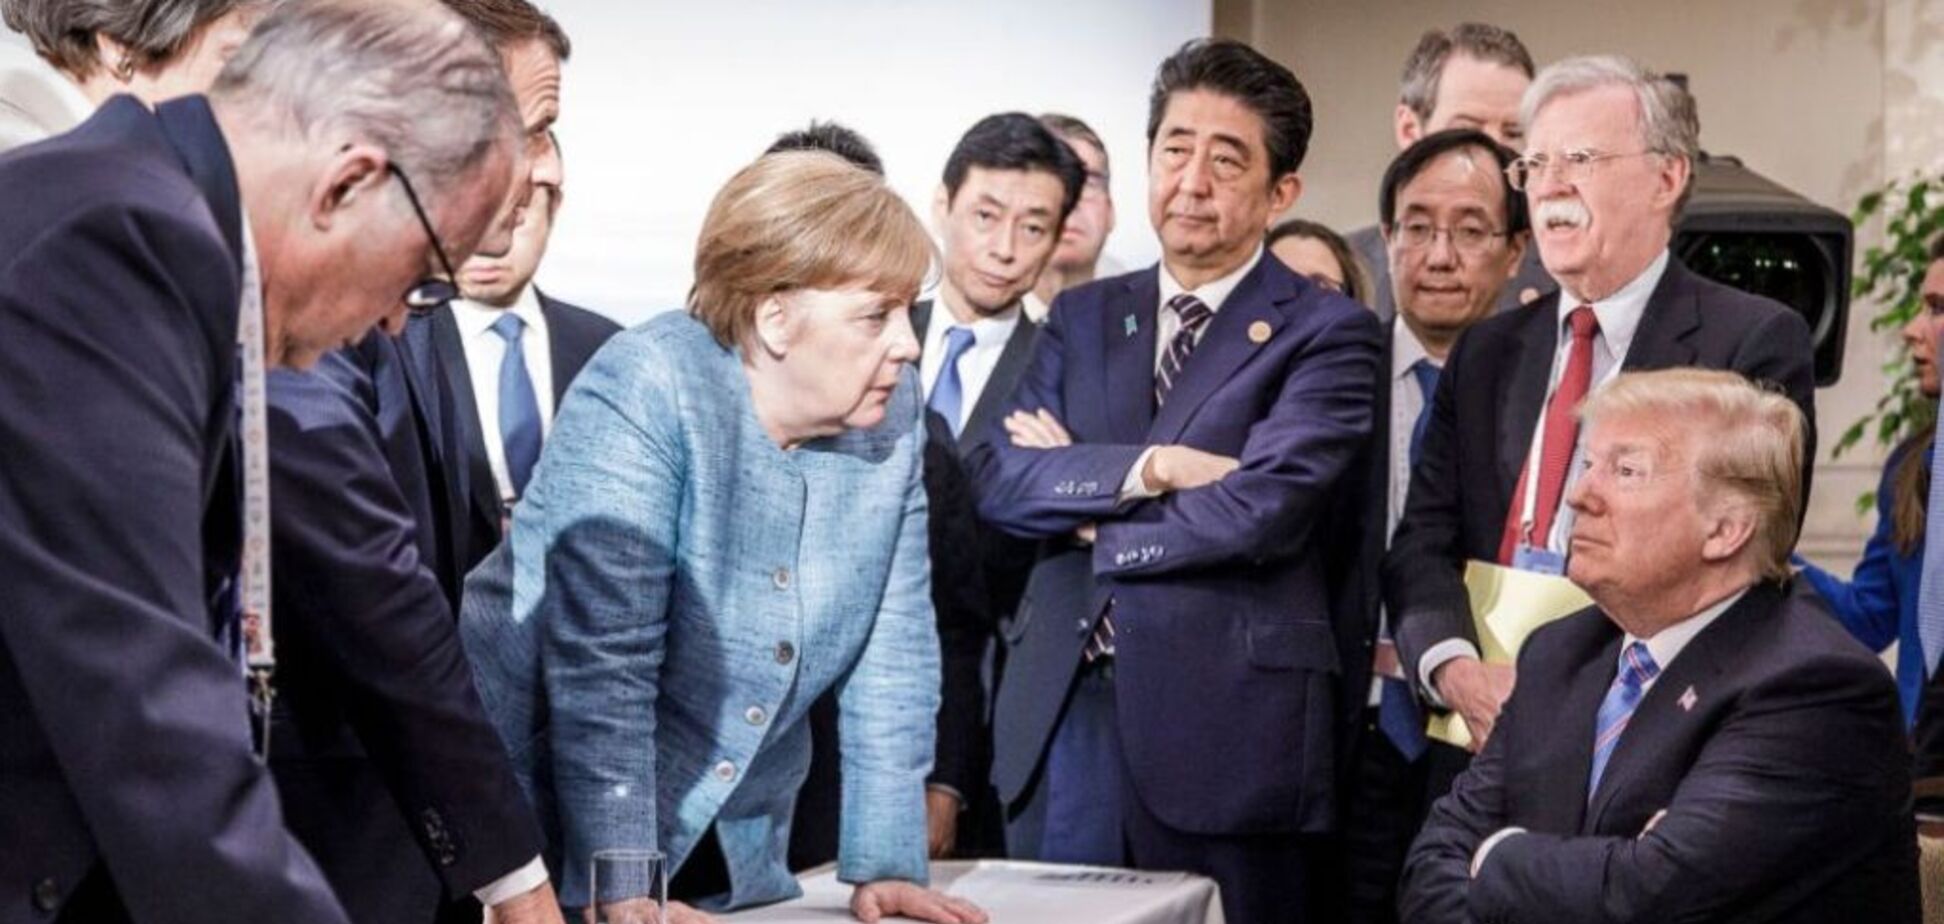 Тінь агресора і тема України: що обговорюватимуть на скандальному G7